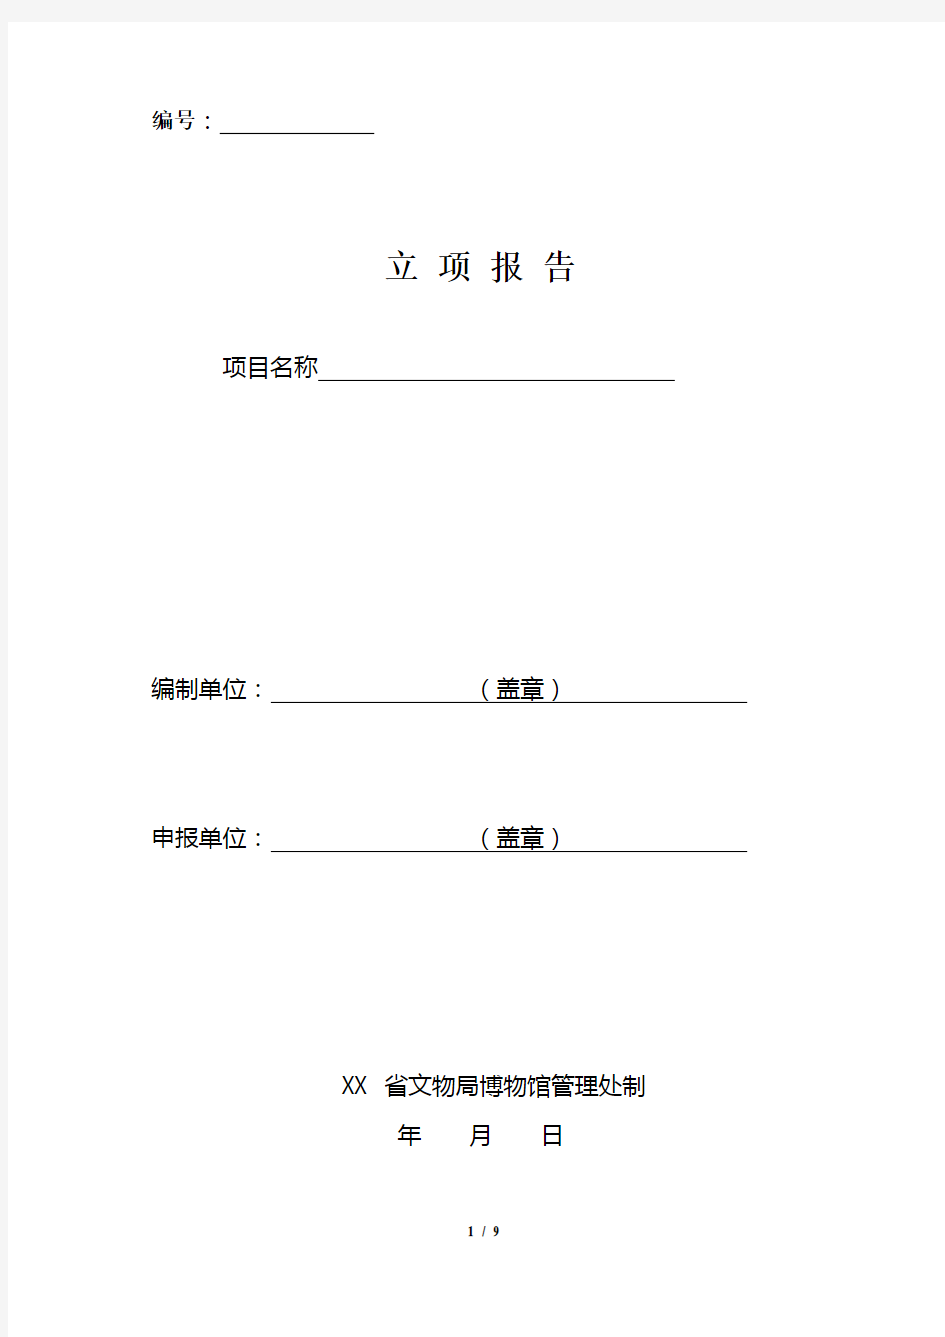 馆藏文物保护和陈列展示等项目立项报告